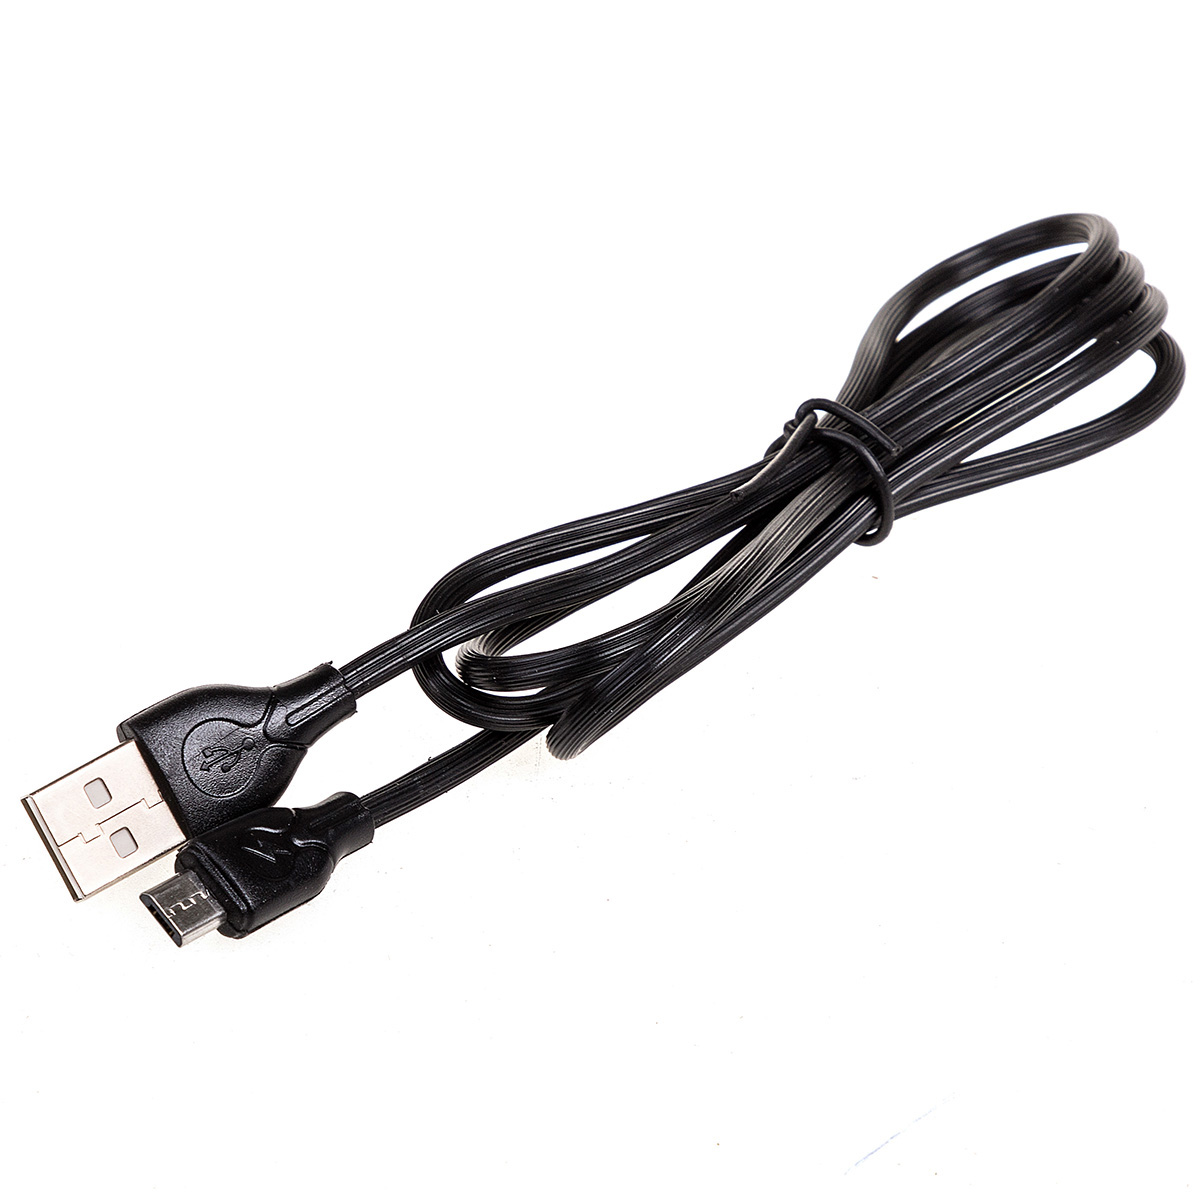 SKYWAY. Кабель USB - 3.0A (1м.), черный в коробке.